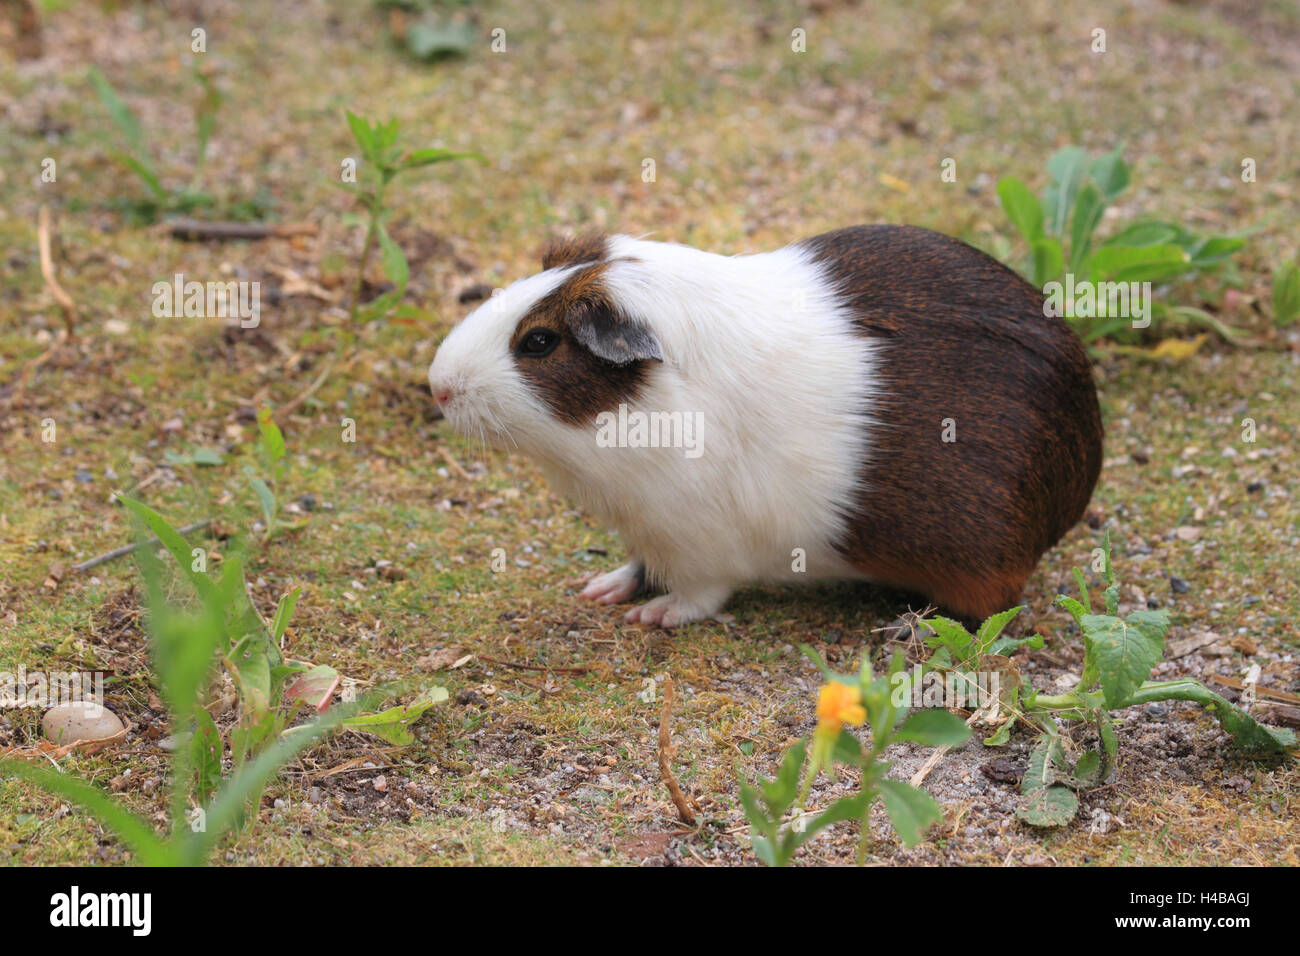 Guinea pig, Cavia aperea Stock Photo